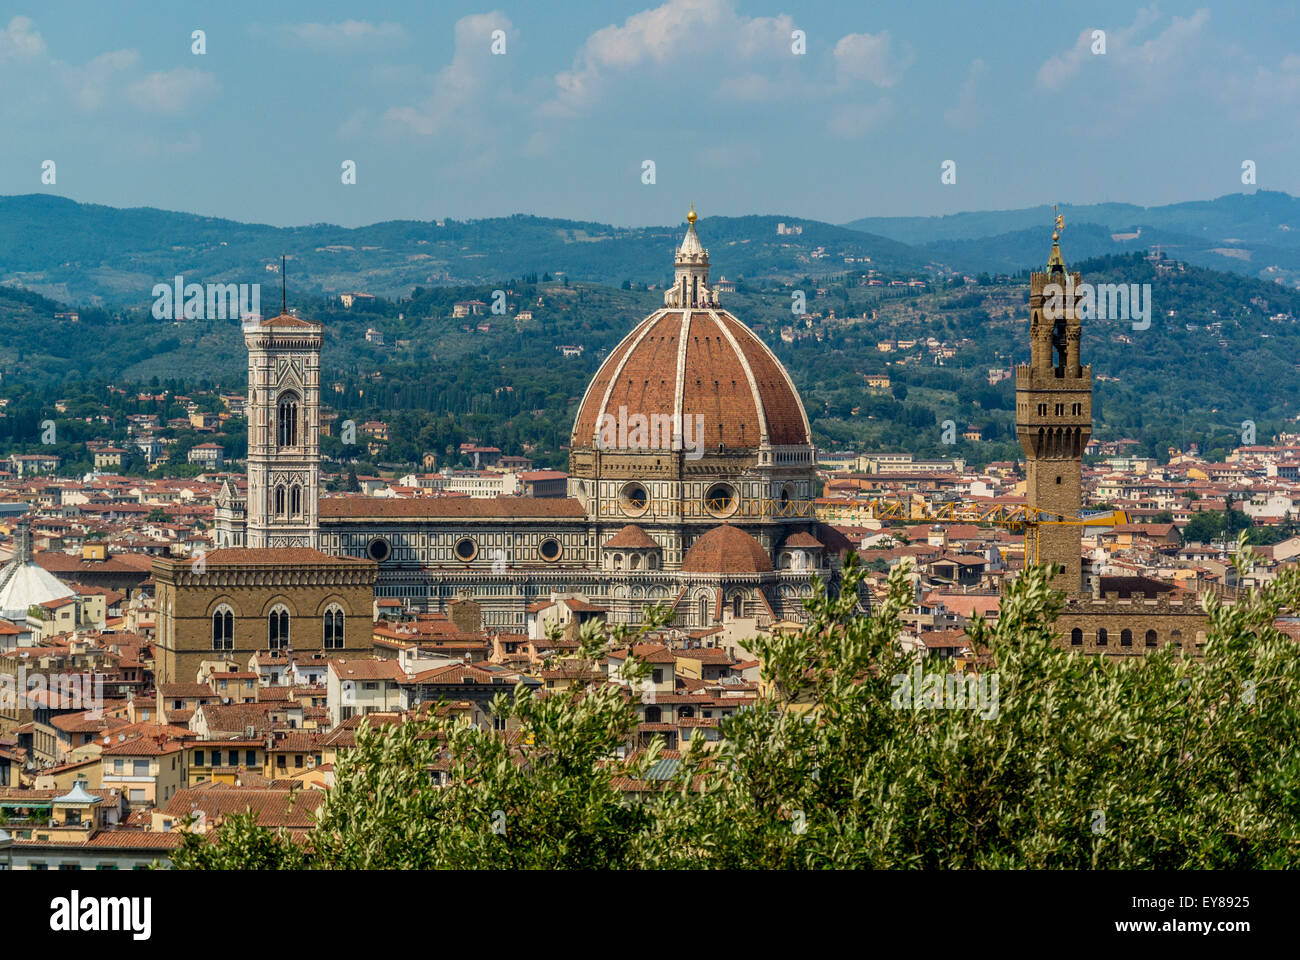 Kathedrale von Florenz vom erhöhten Aussichtspunkt des Fort Belverdere aus gesehen. Florenz. Italien. Stockfoto